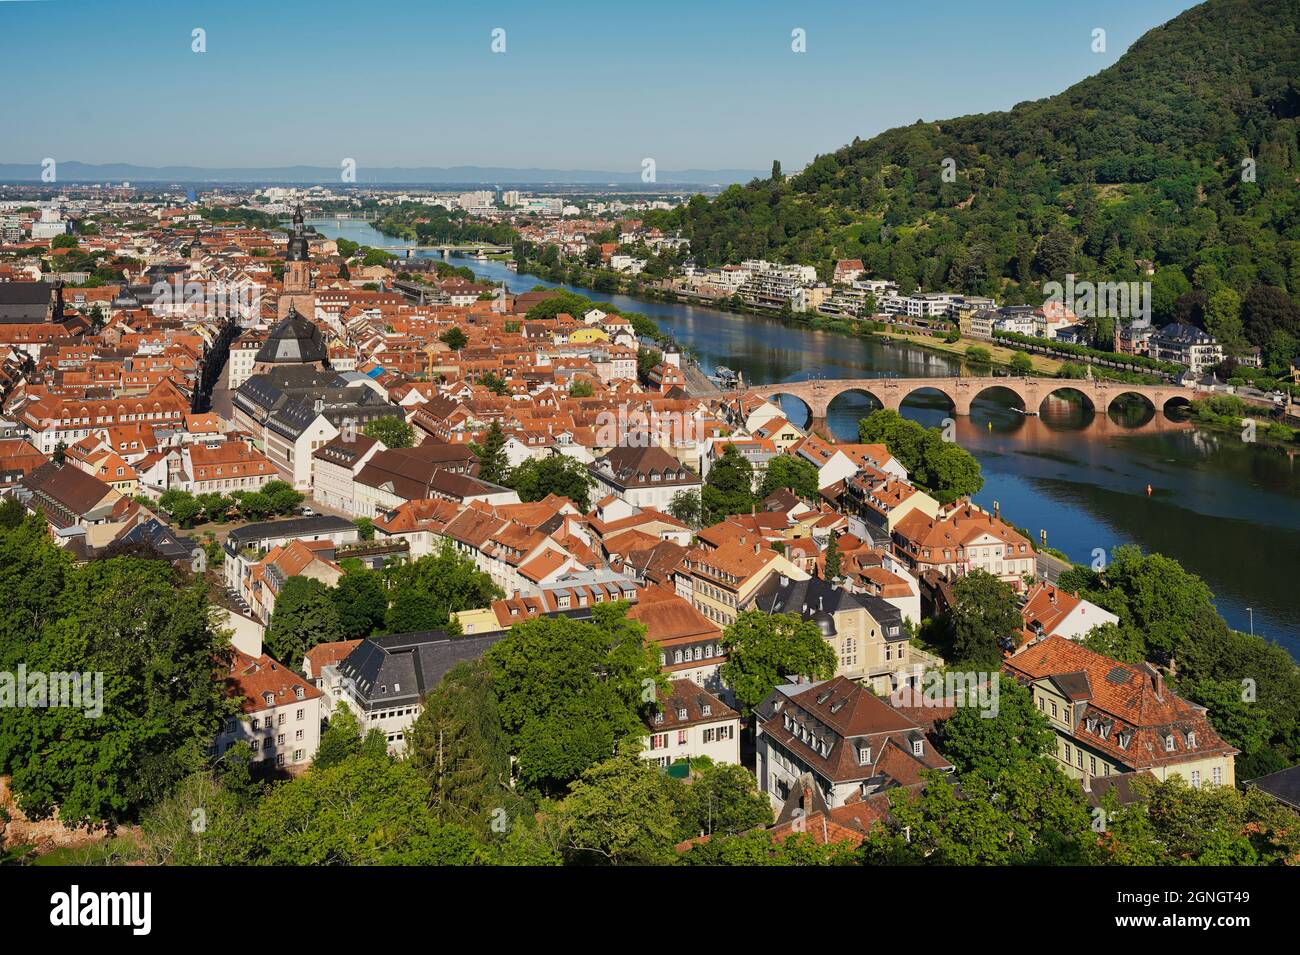 Die Altstadt von Heidelberg mit der Alten Brücke, dem Neckar und dem Brückentor. Blick aus dem Schlossgarten. Deutschland. Stockfoto